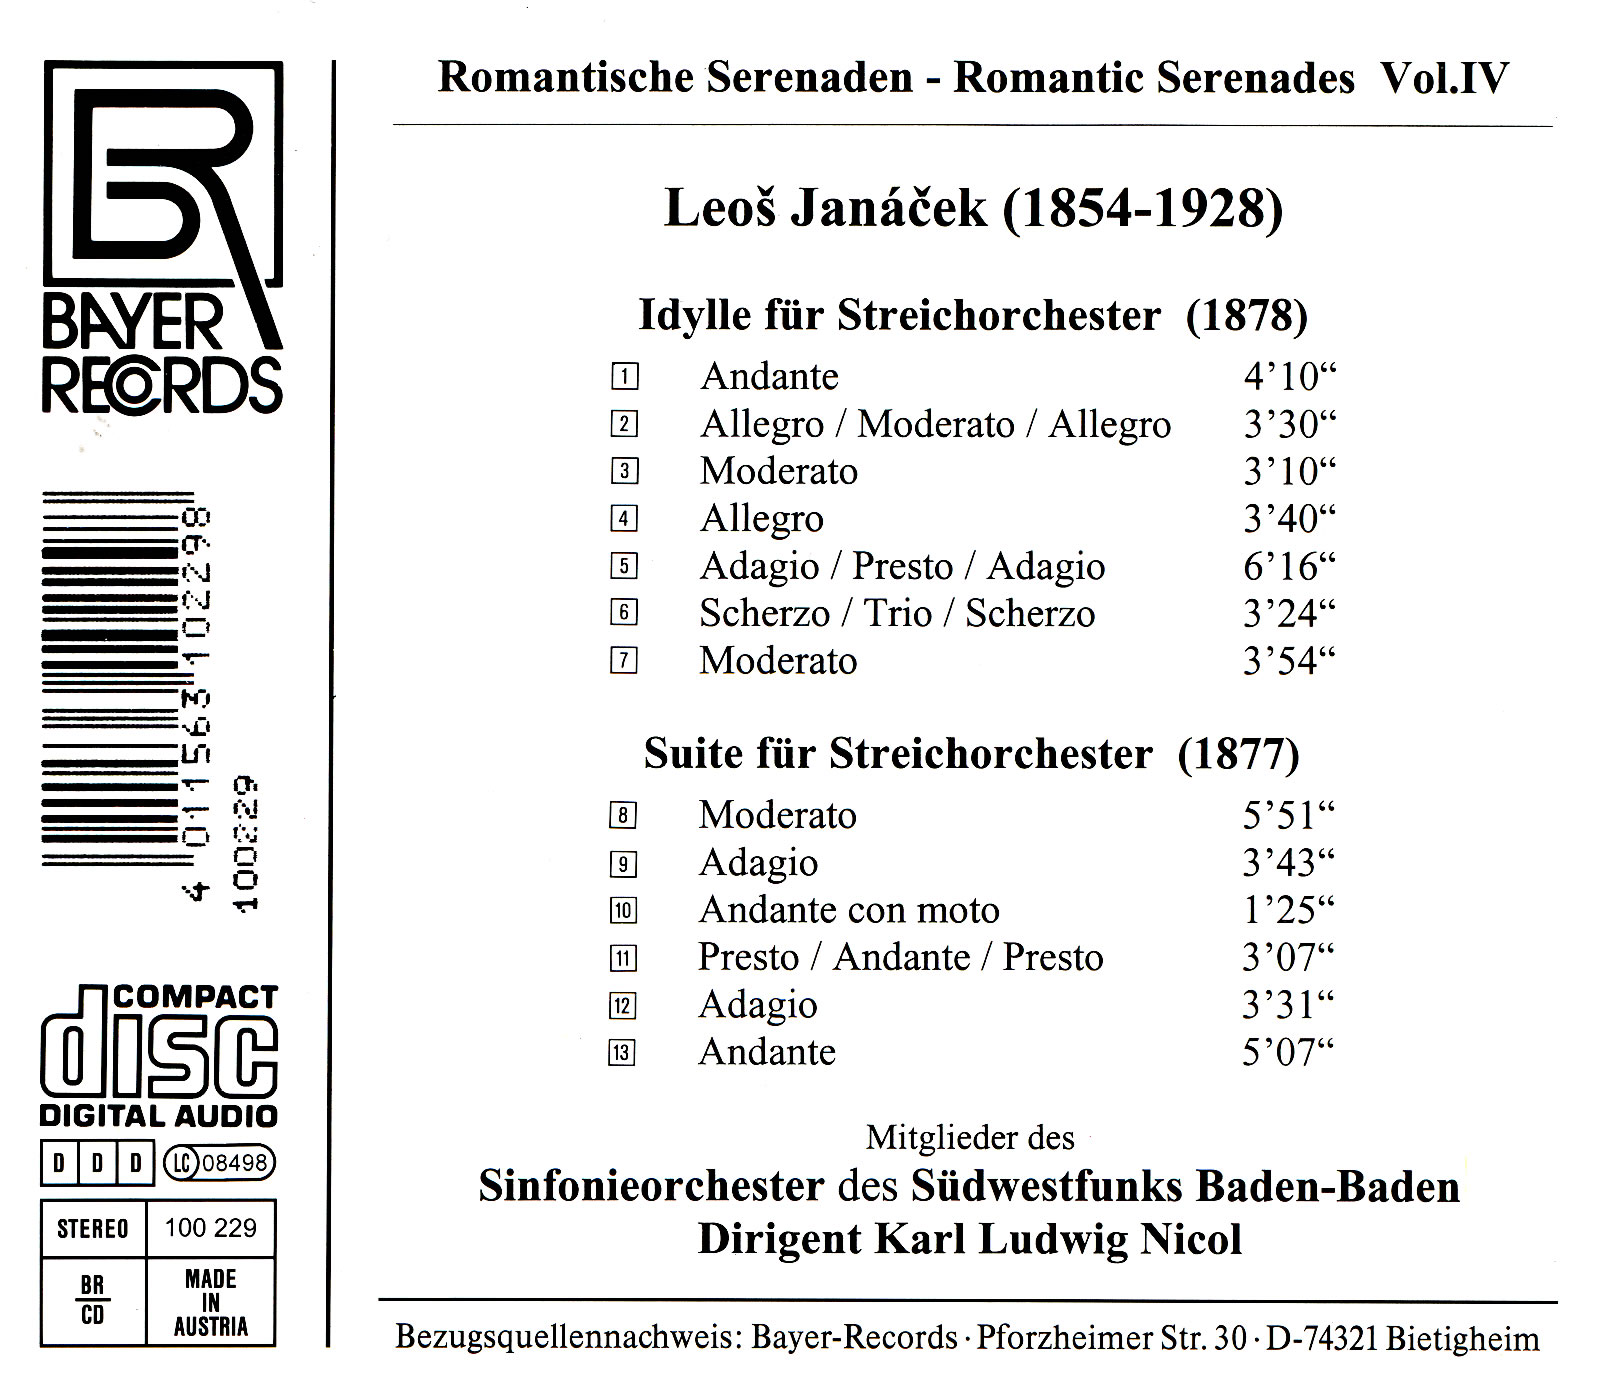 Romantische Serenaden IV